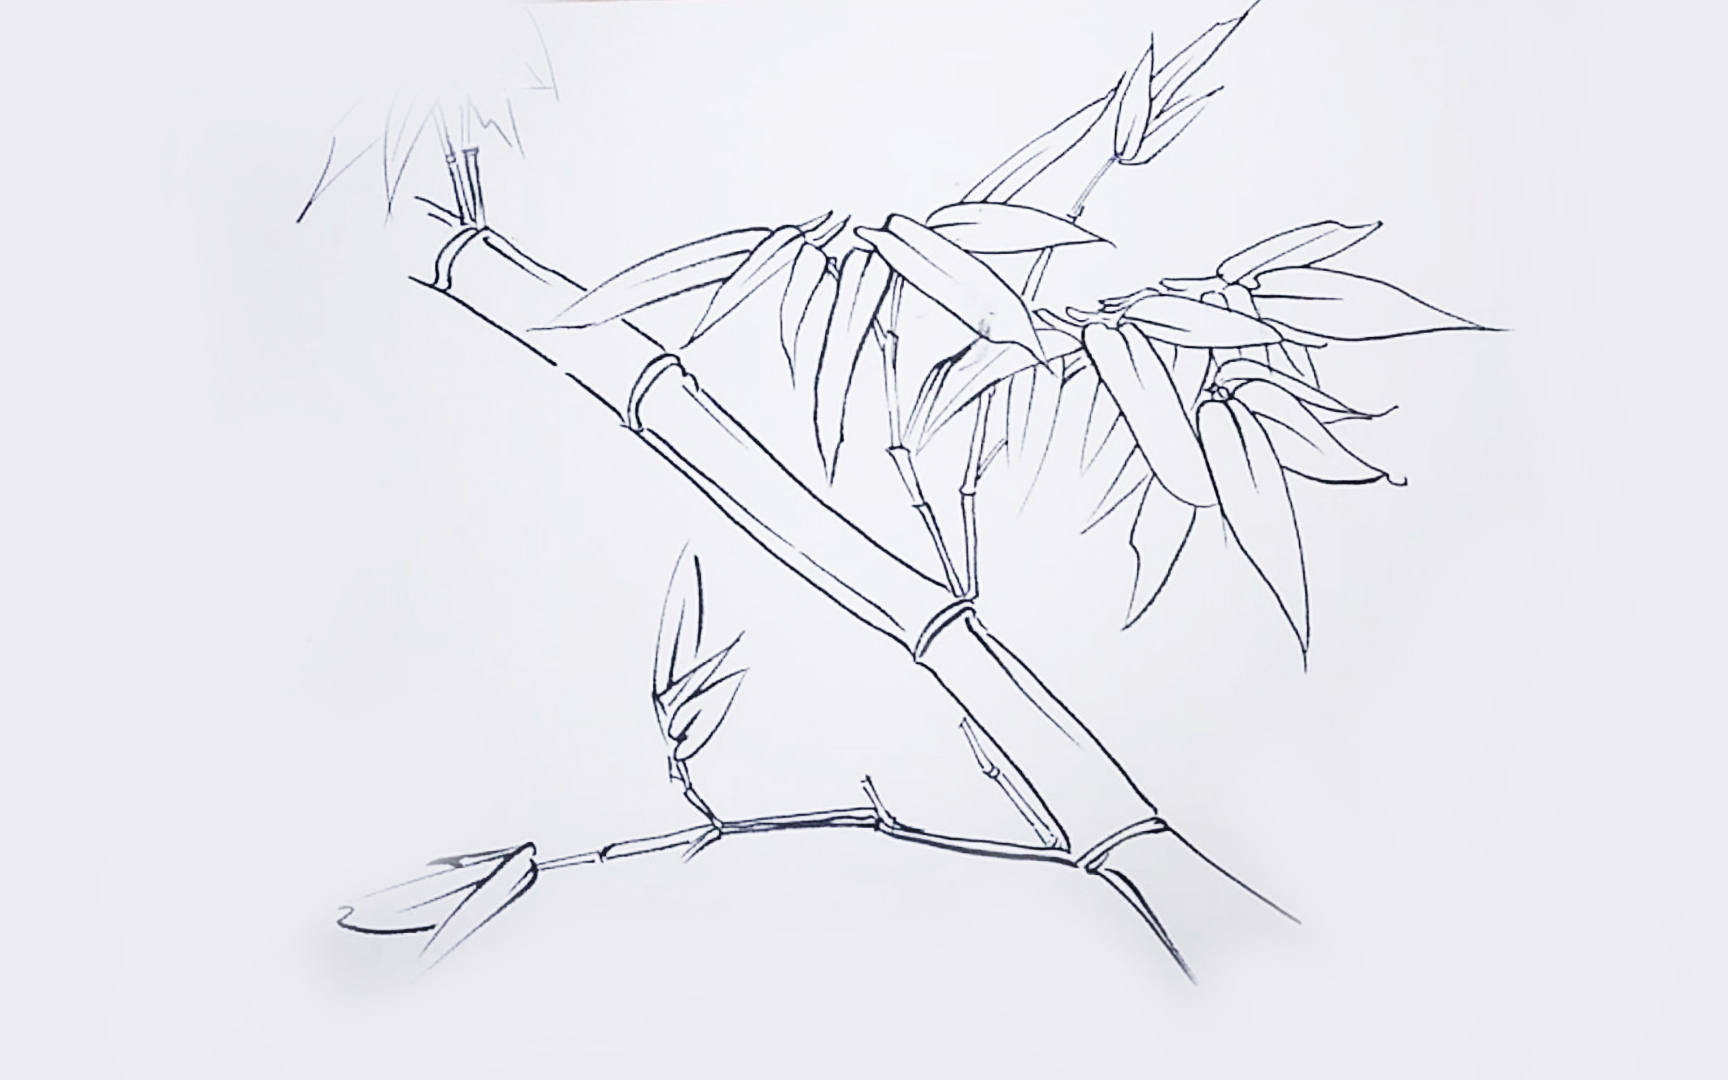 学习画工笔竹子,先从它们的白描形态开始